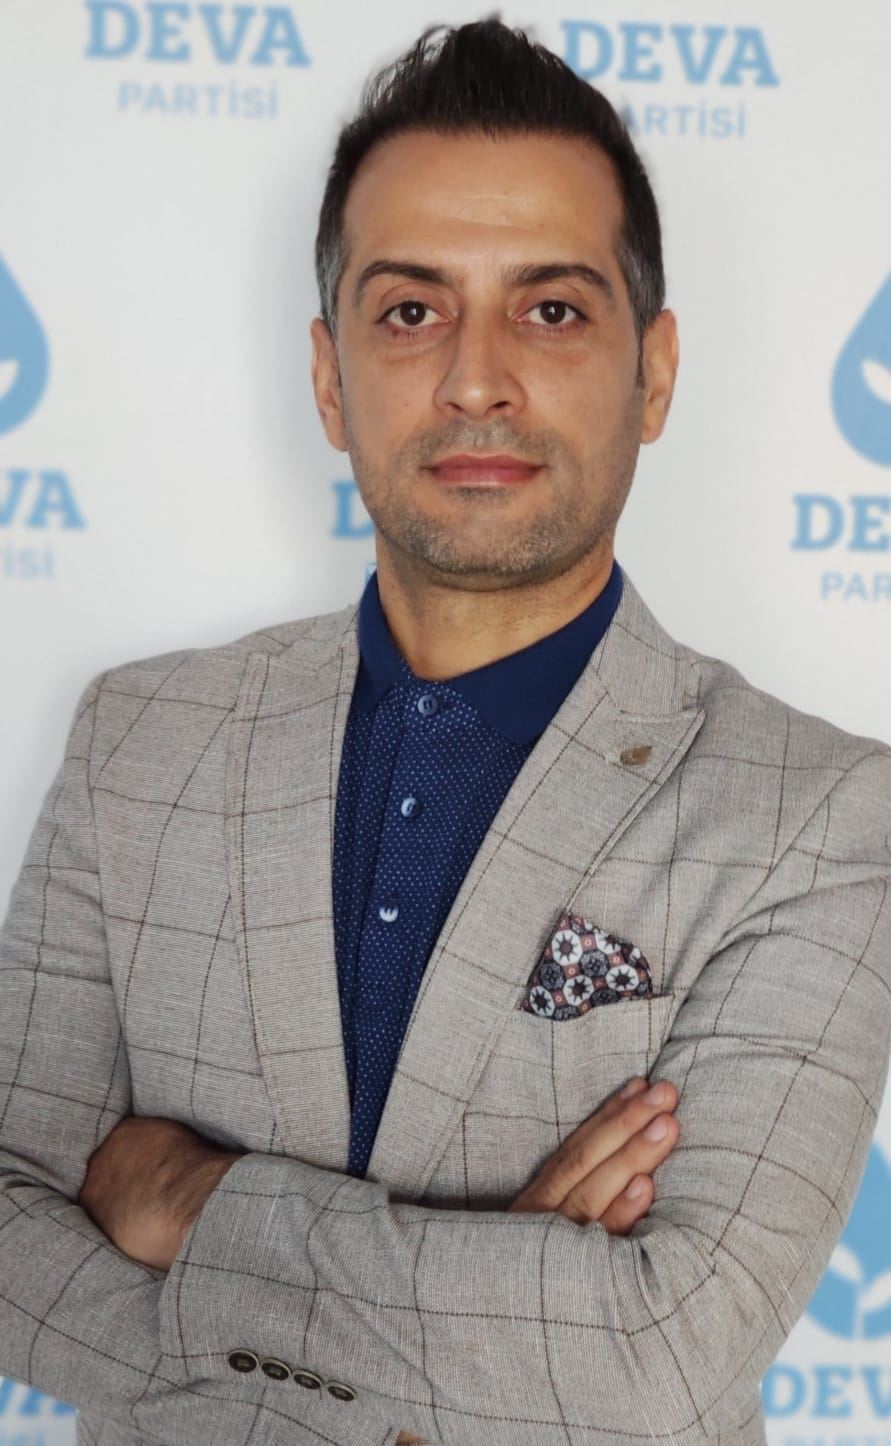 DEVA Partili İbrahim Kılıç: Mardin 81 il içerisinde eğitim başarısı sırası açısından 76 sırada 